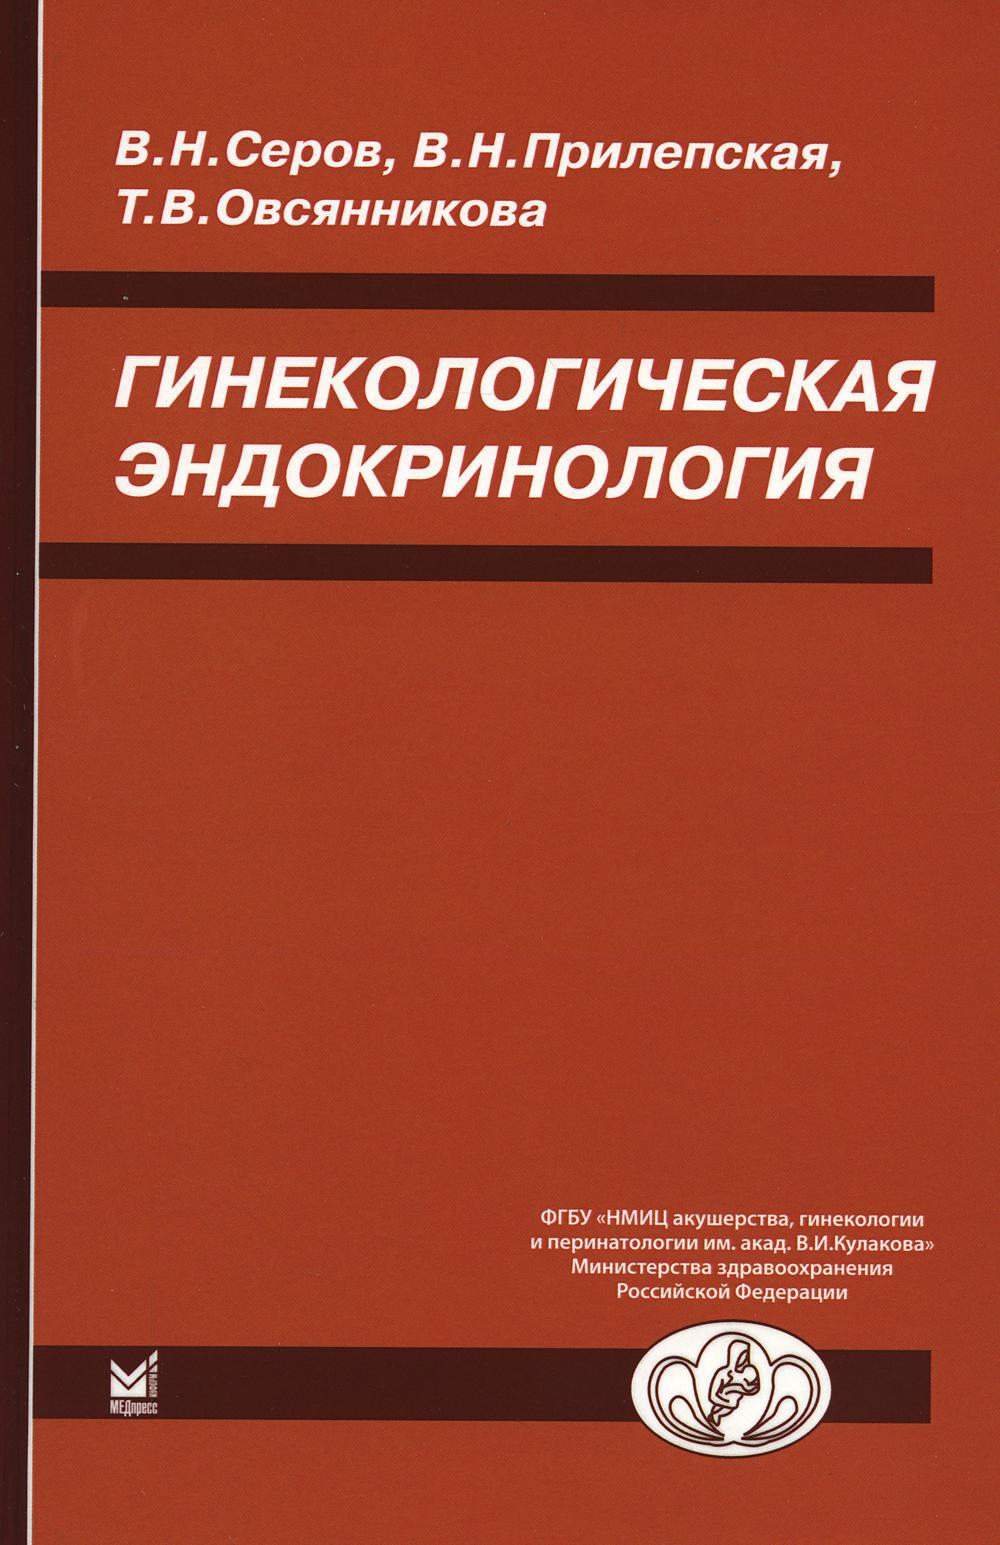 Гинекологическая эндокринология. 7-е изд